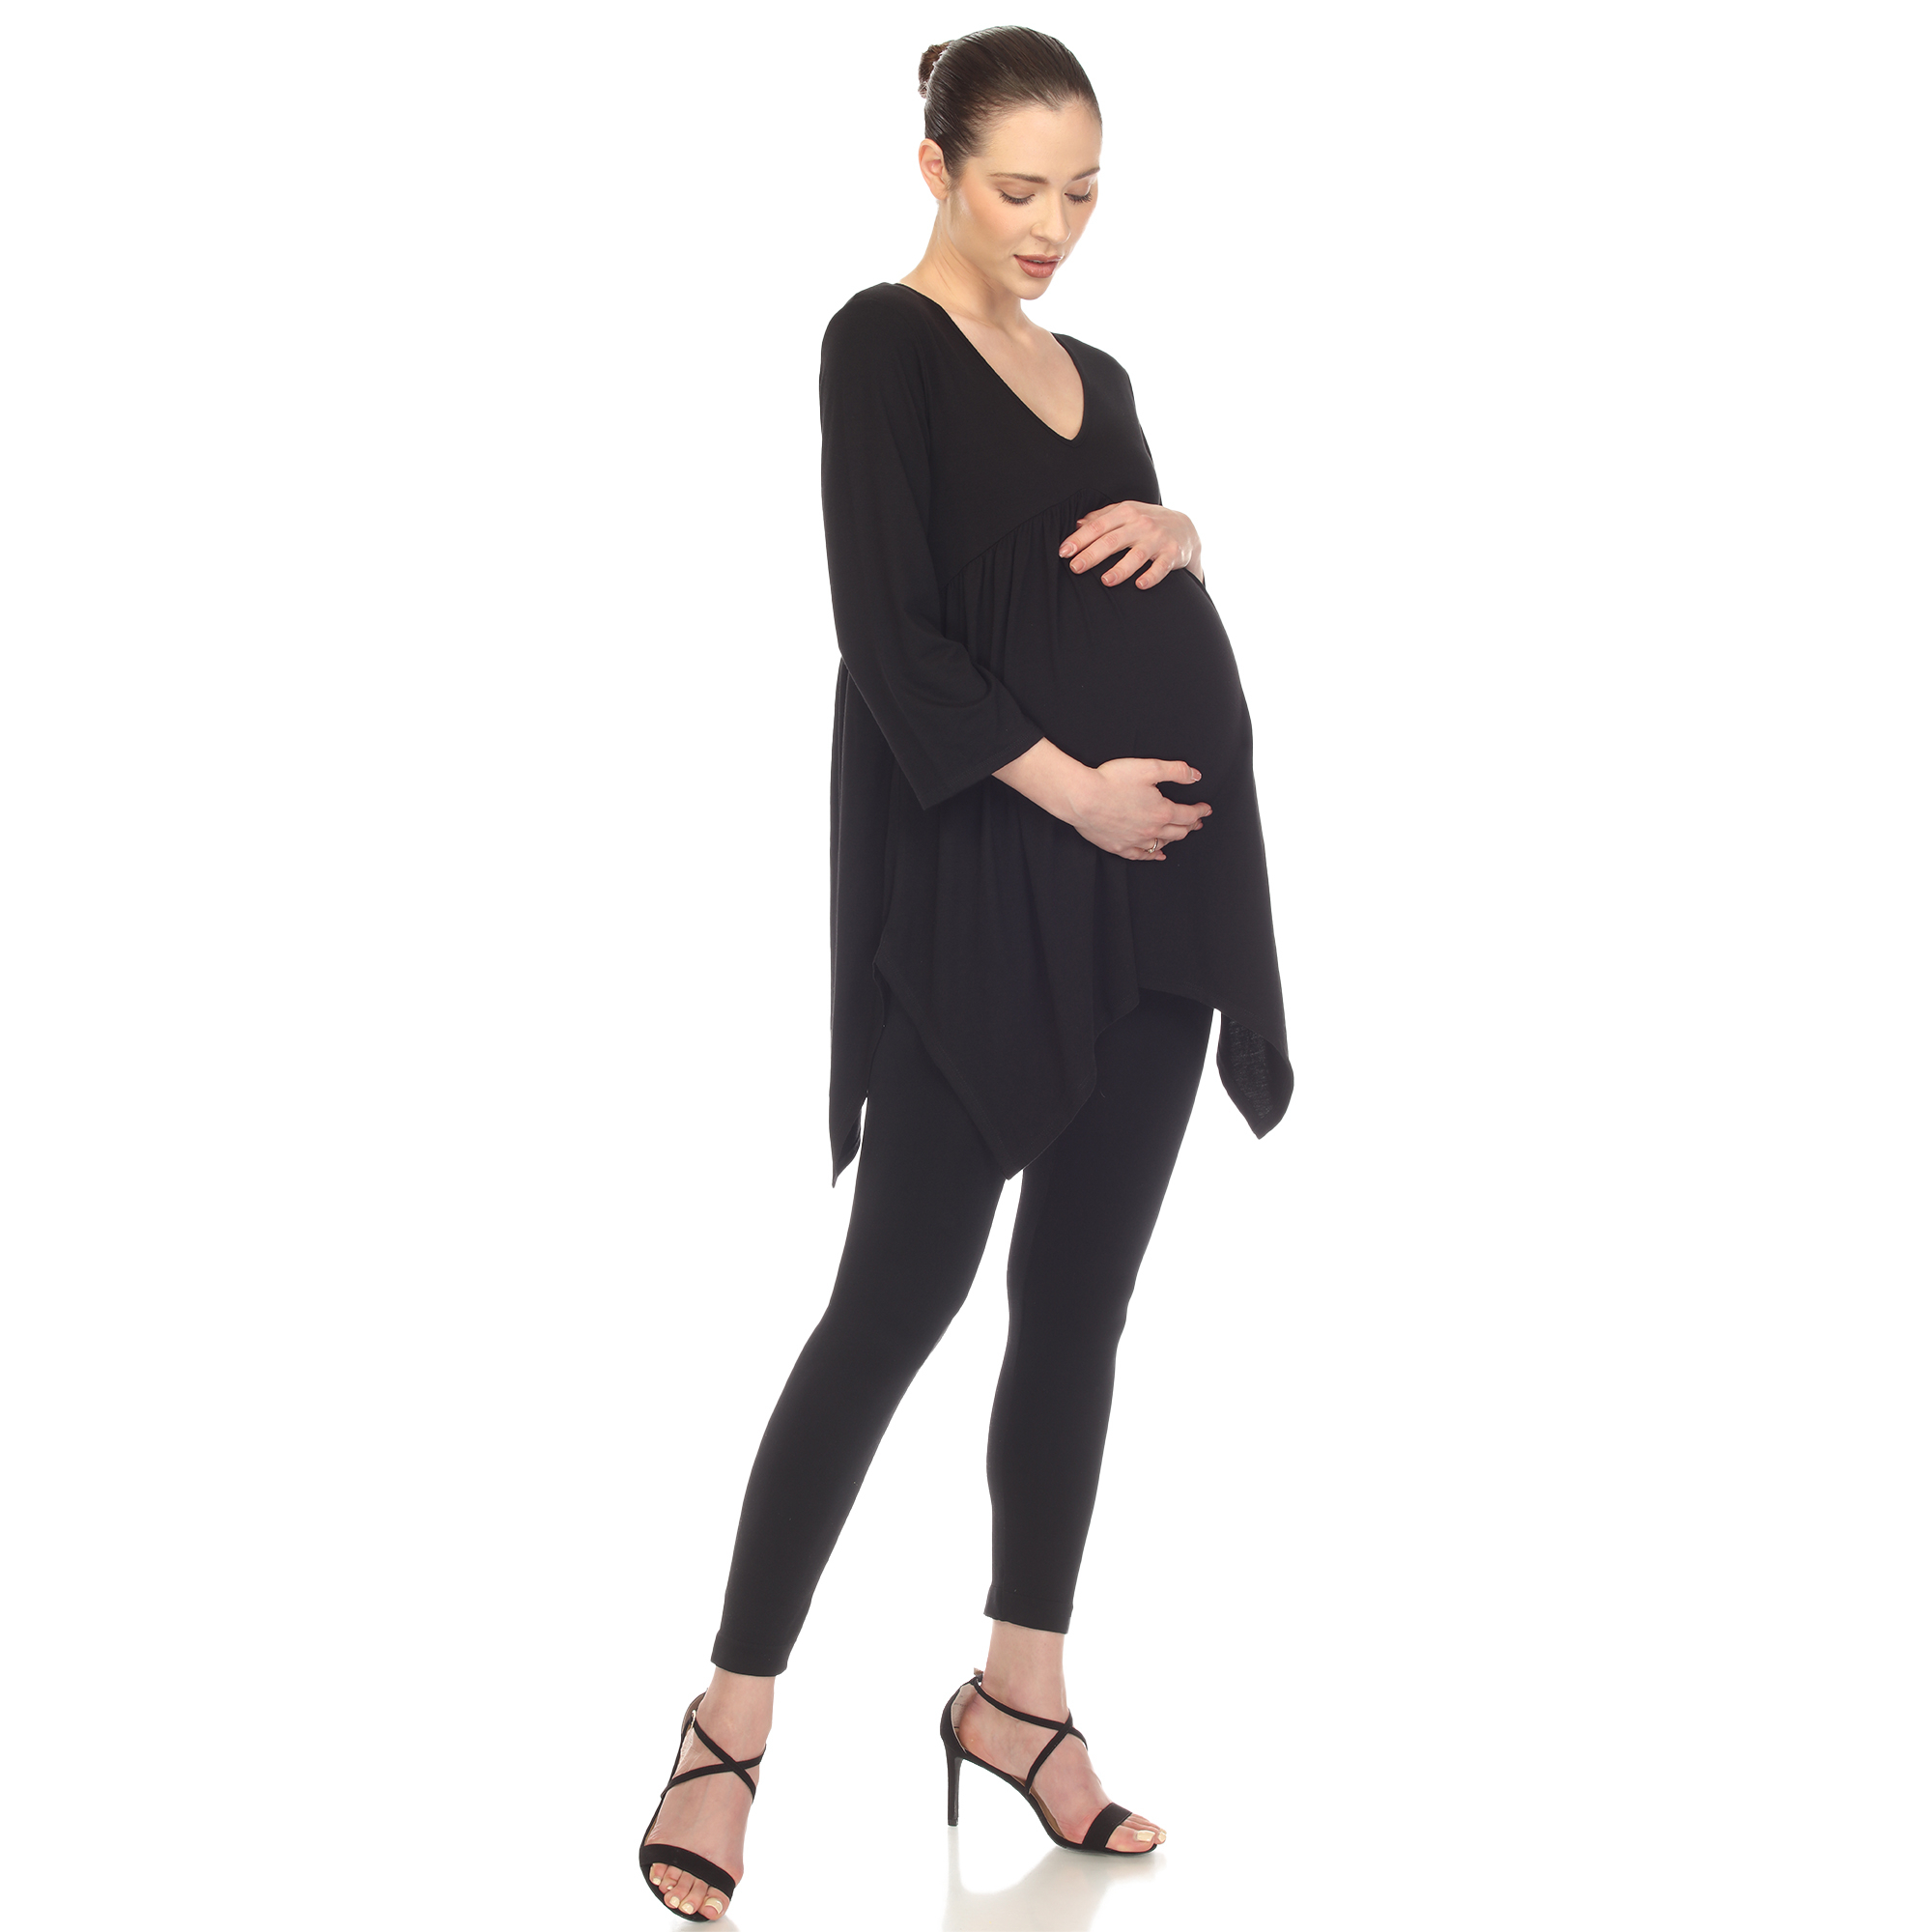 White Mark Women's Maternity Empire Waist V-Neck Tunic Top - Black, Large